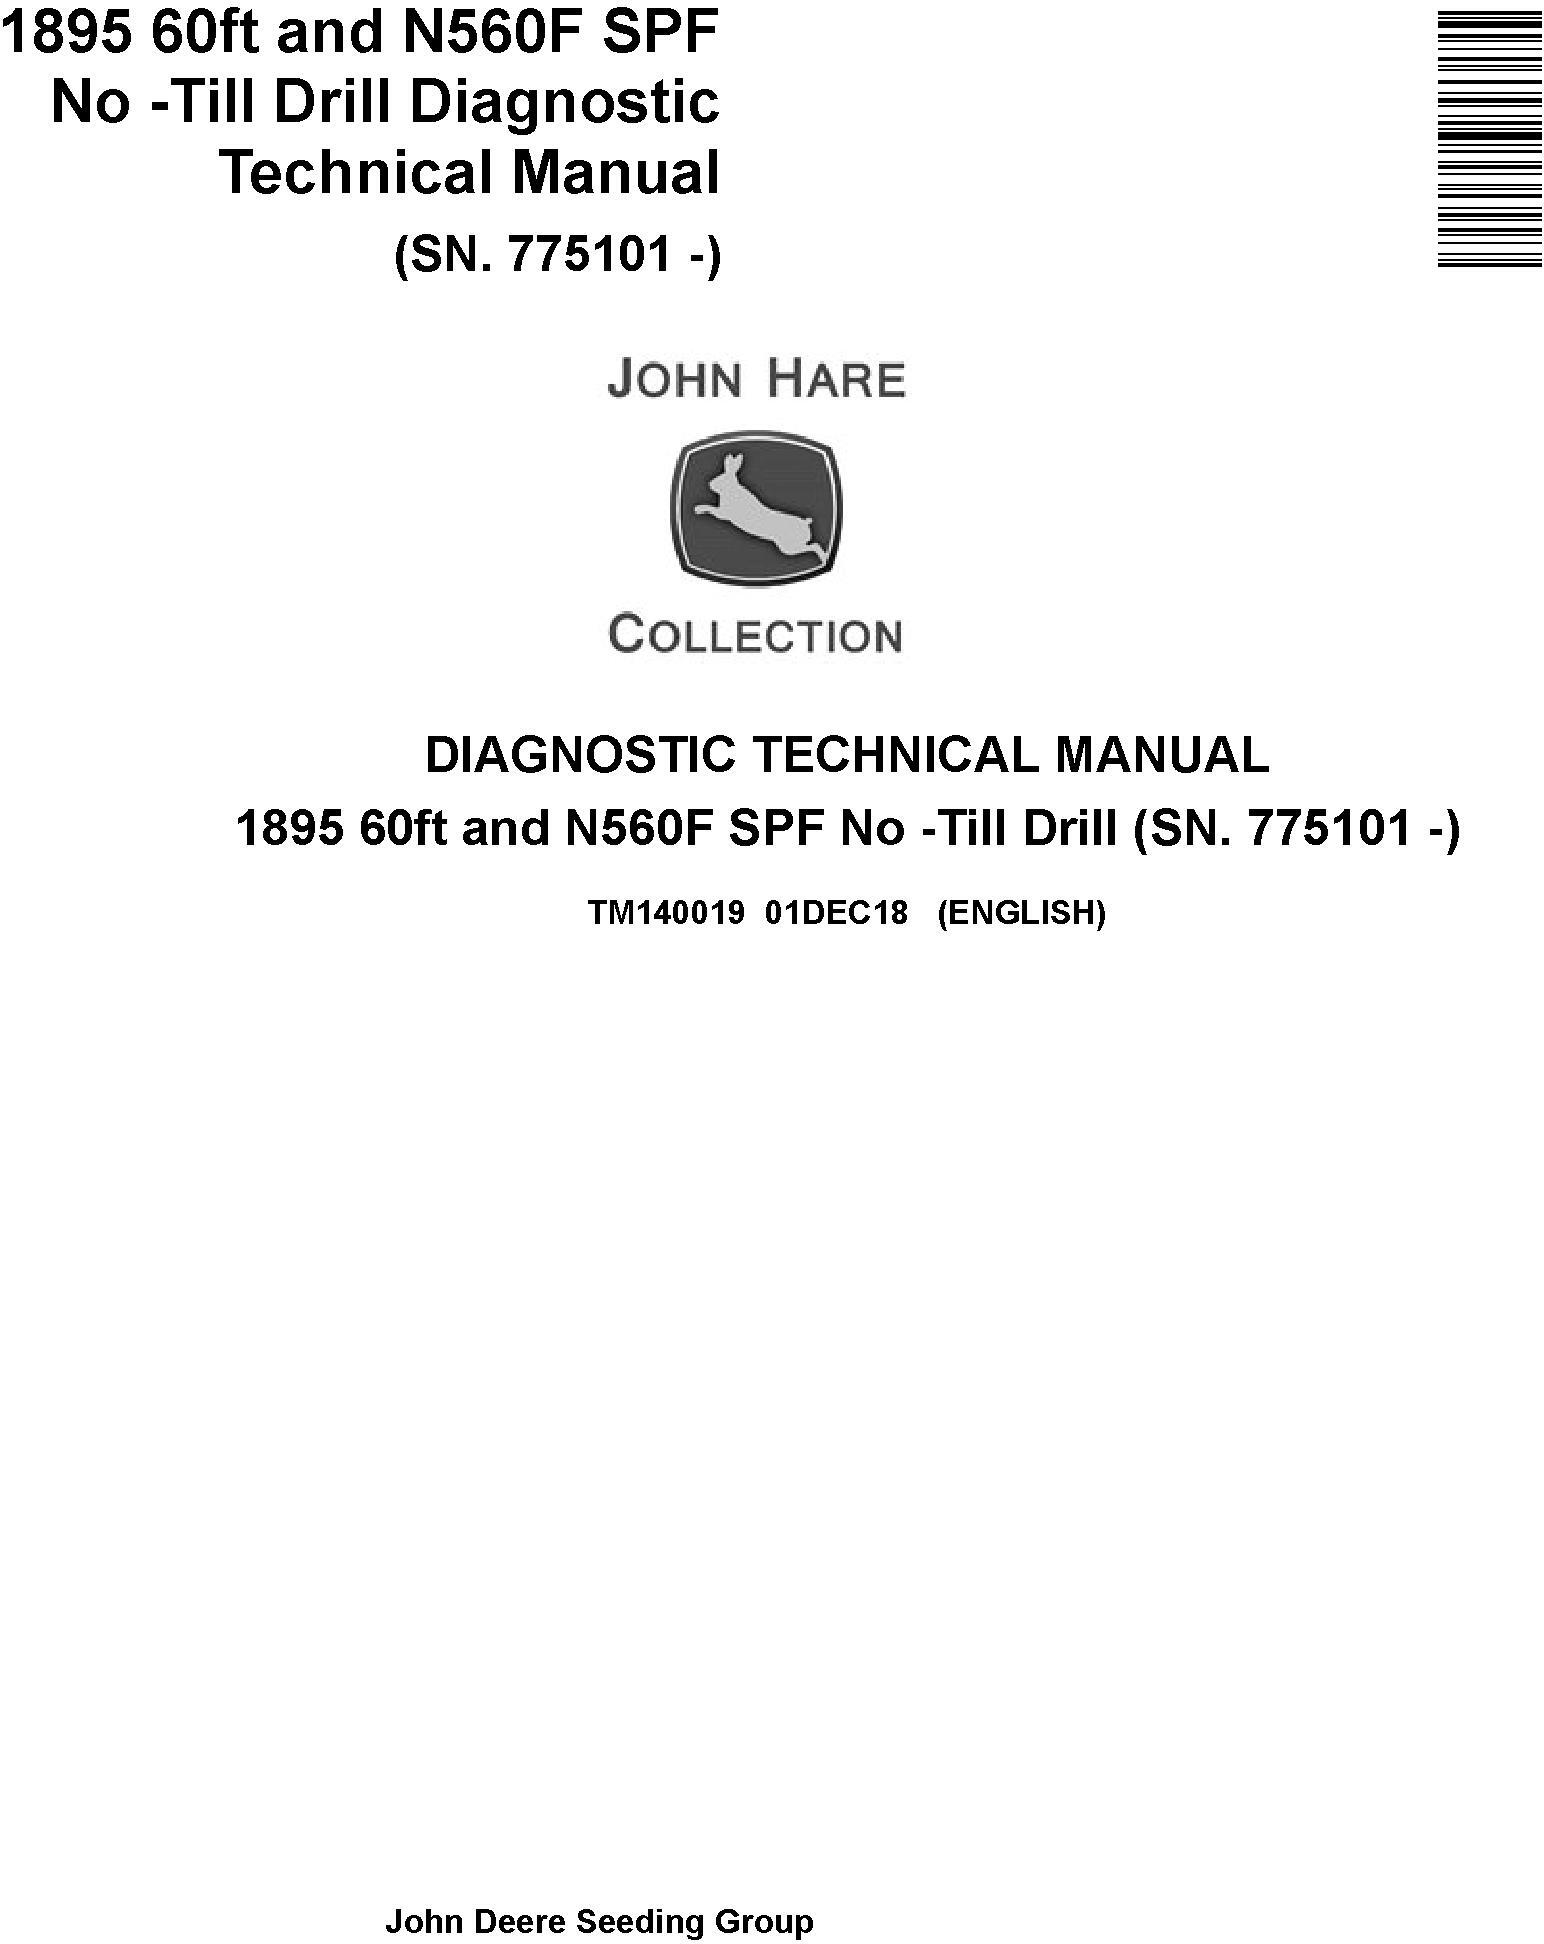 John Deere 1895 60ft N560F SPF No Till Drill Diagnostic Technical Manual TM140019